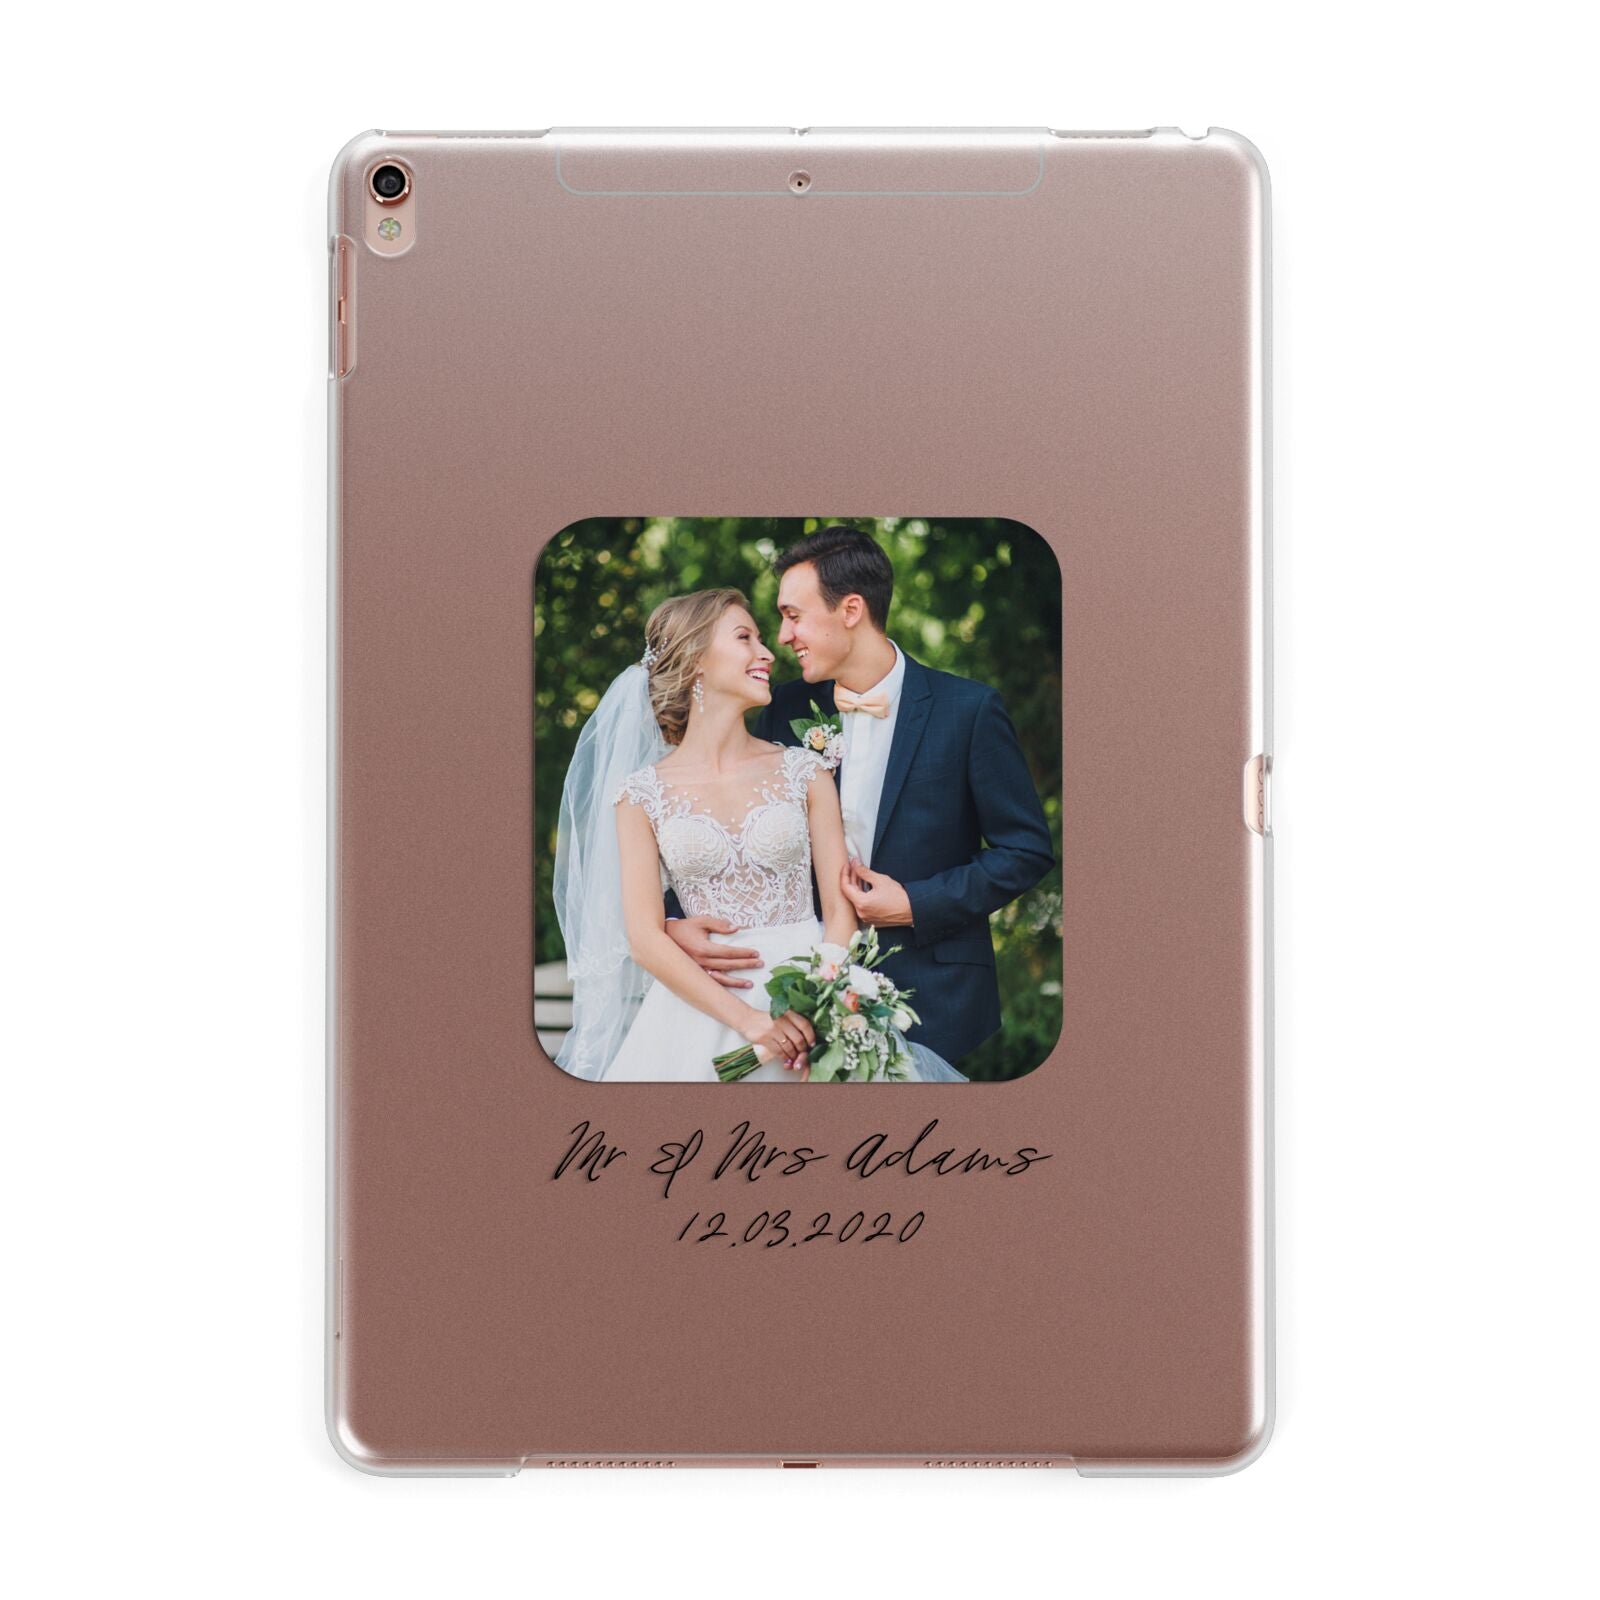 Wedding Photo Upload Keepsake with Text Apple iPad Rose Gold Case